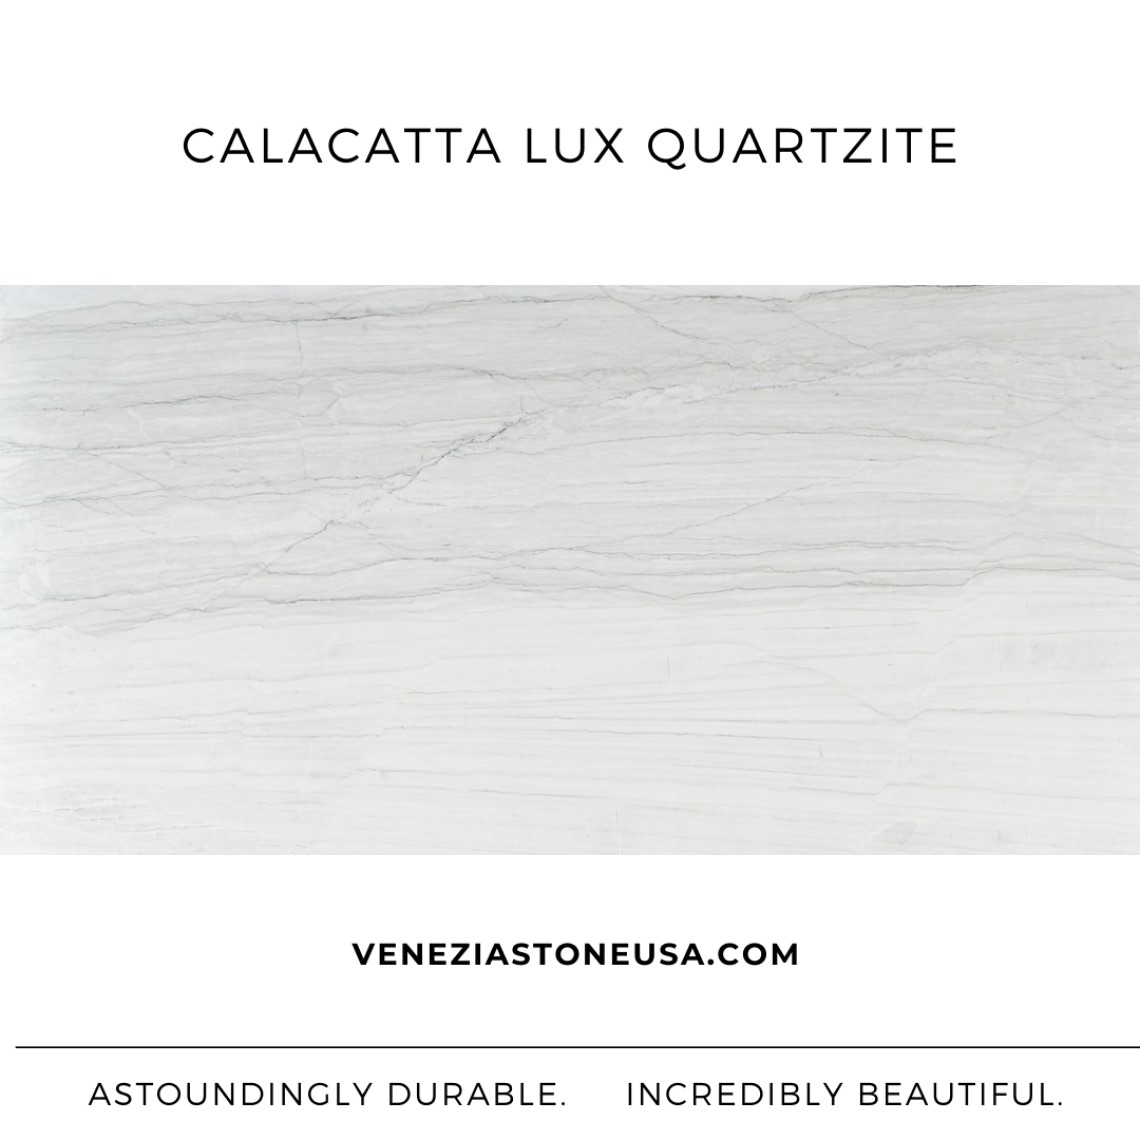 Calacatta LUX Quartzite